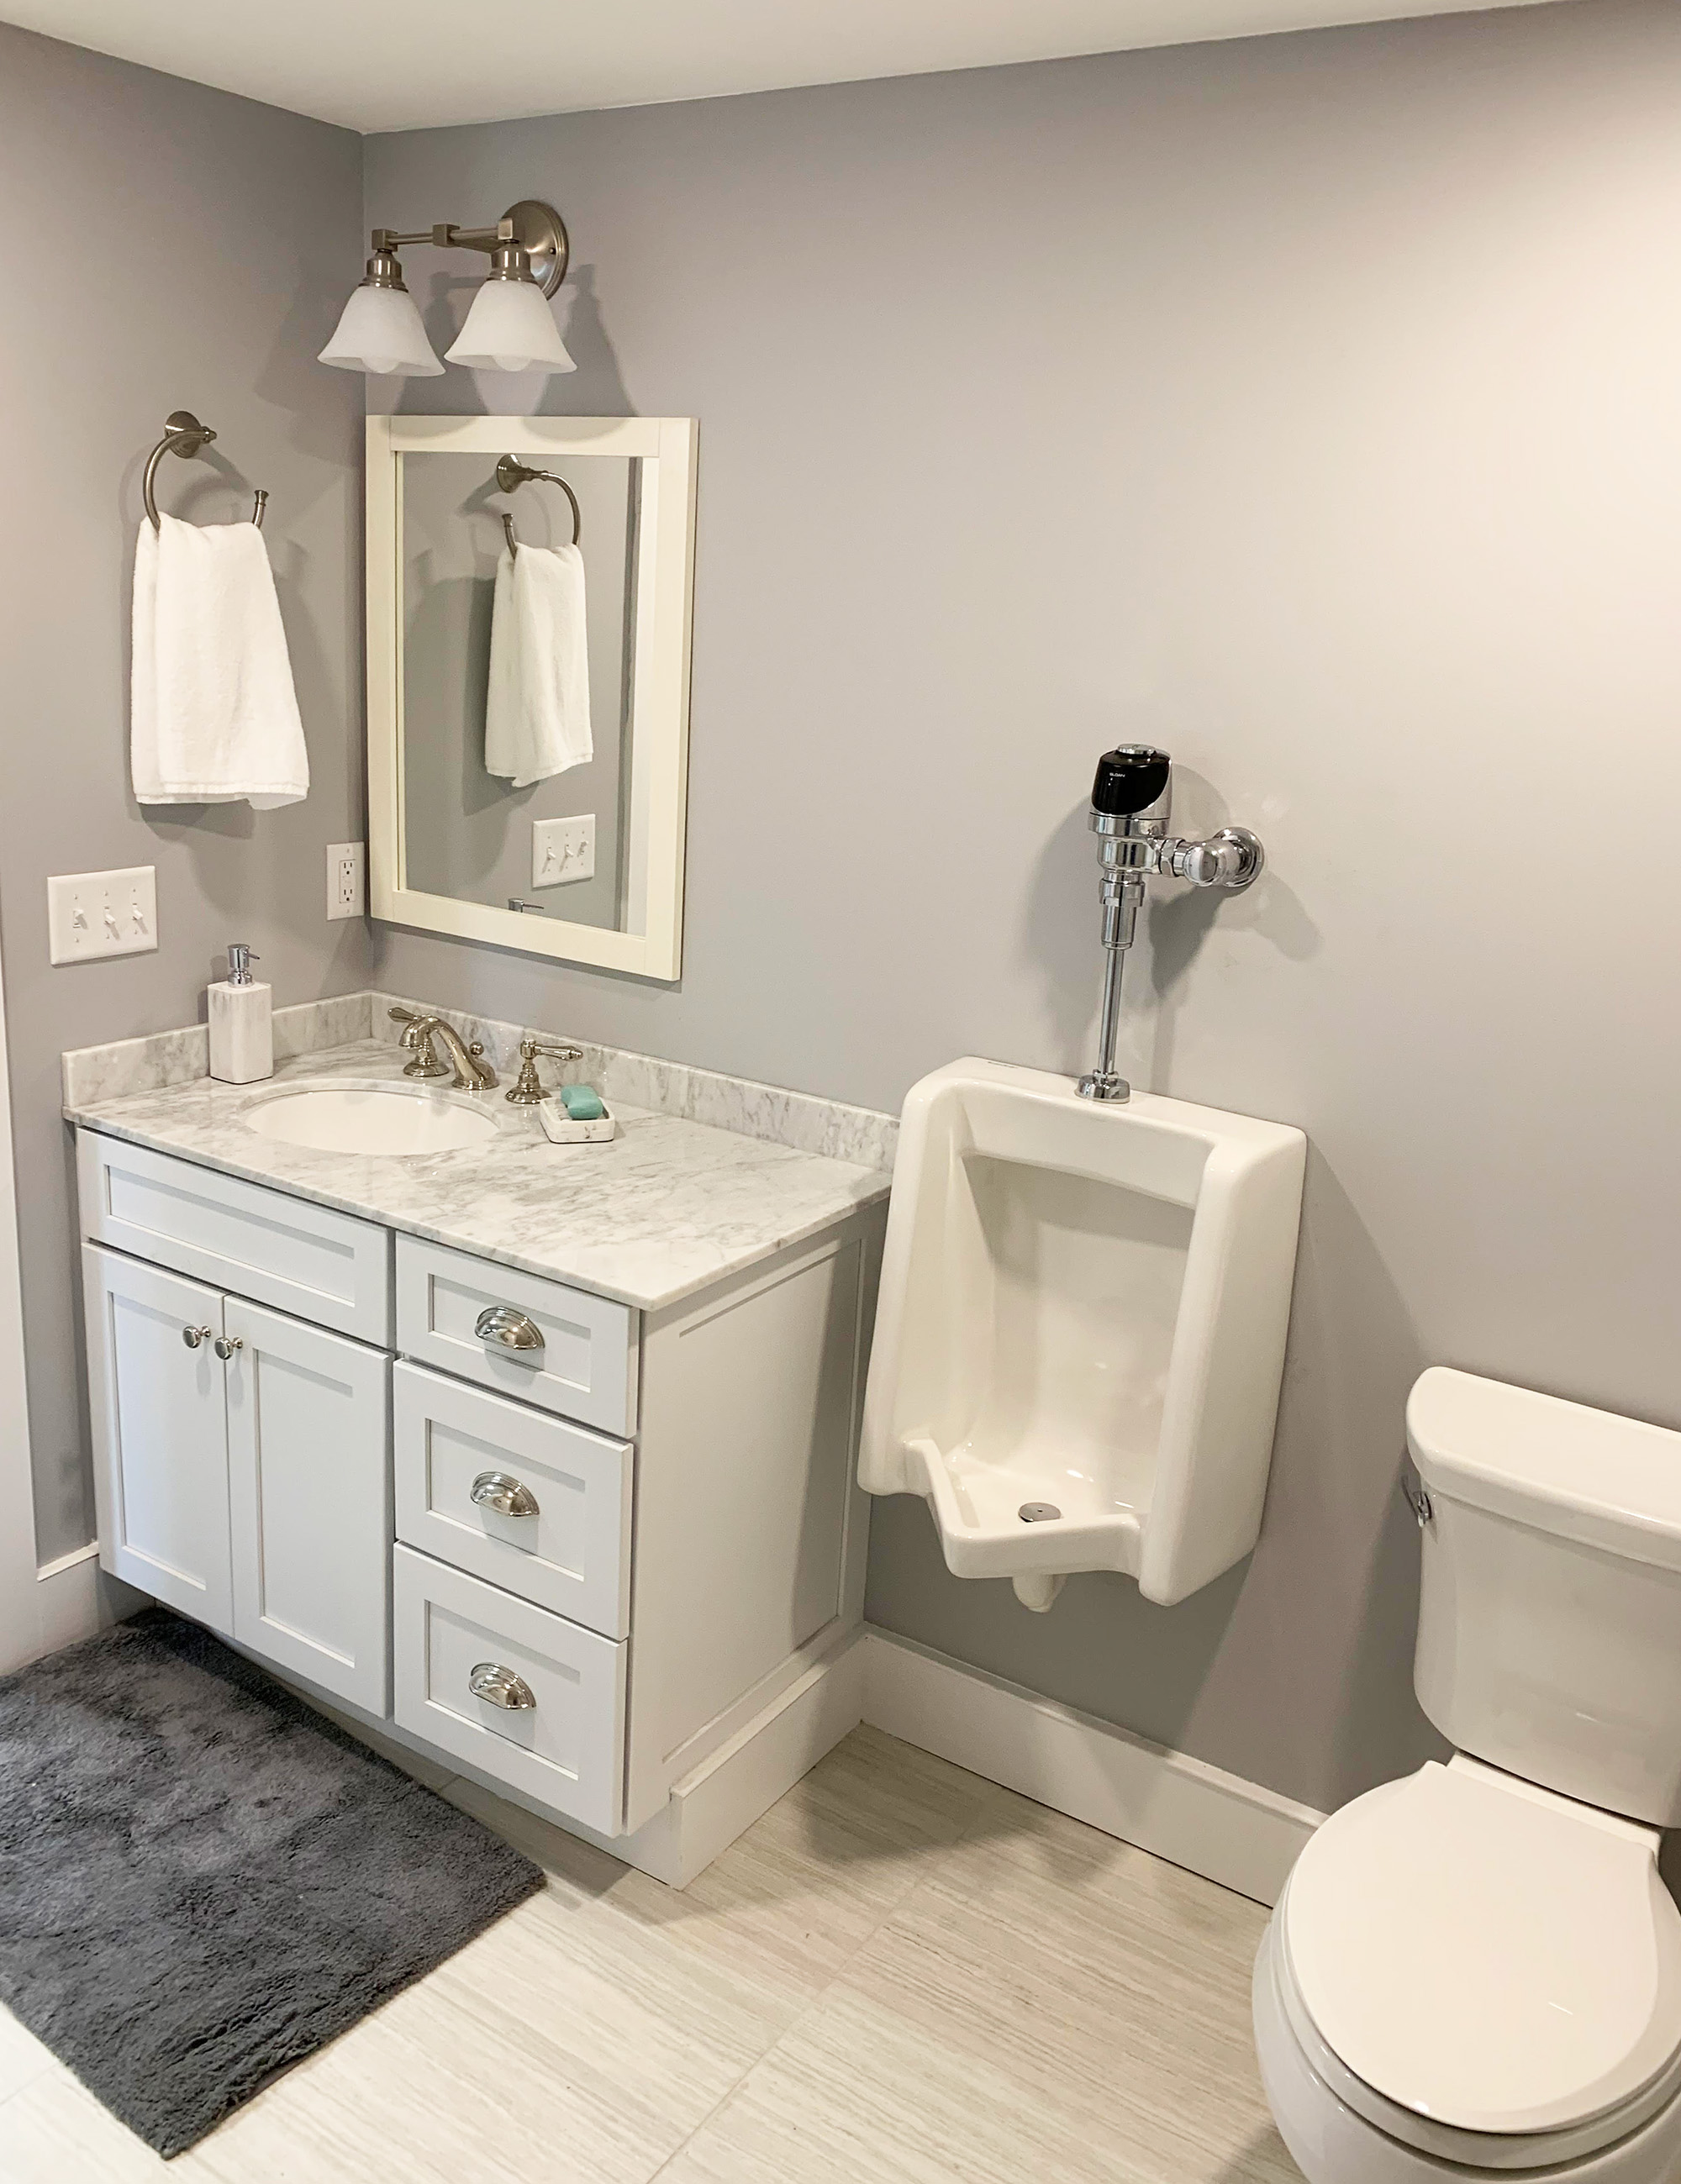 Complete bathroom remodel including sink, vanity, fixtures, toilet, and plumbing.